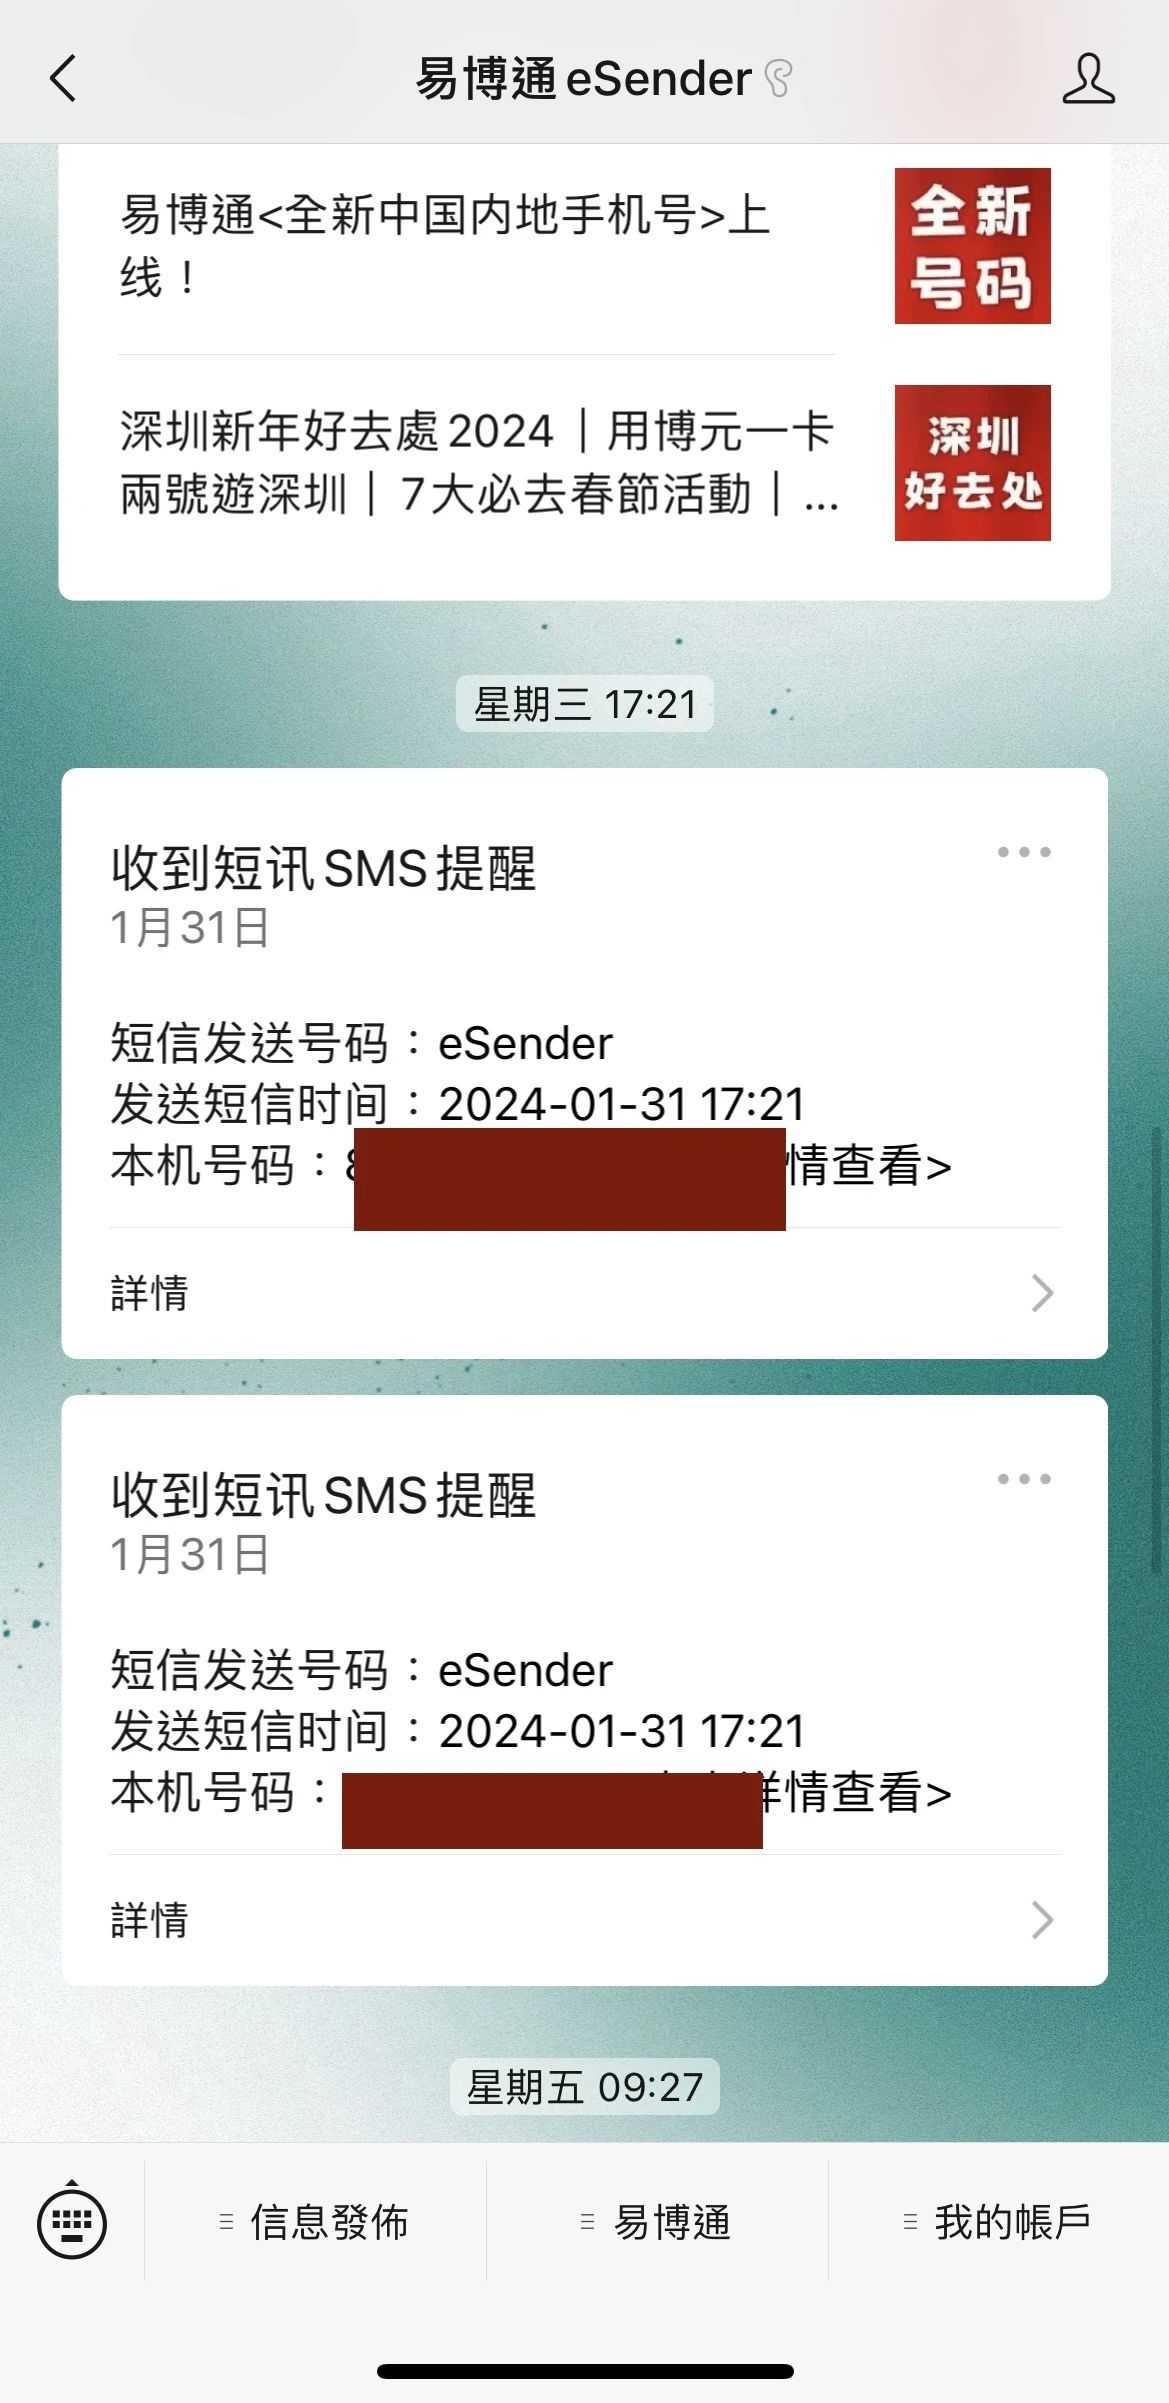 Βήμα 8: Ολοκληρώστε την πληρωμή και λάβετε SMS, υποδεικνύοντας ότι ο αριθμός κινητού τηλεφώνου του Χονγκ Κονγκ έχει παραγγείλει επιτυχώς. Η 11η φωτογραφία